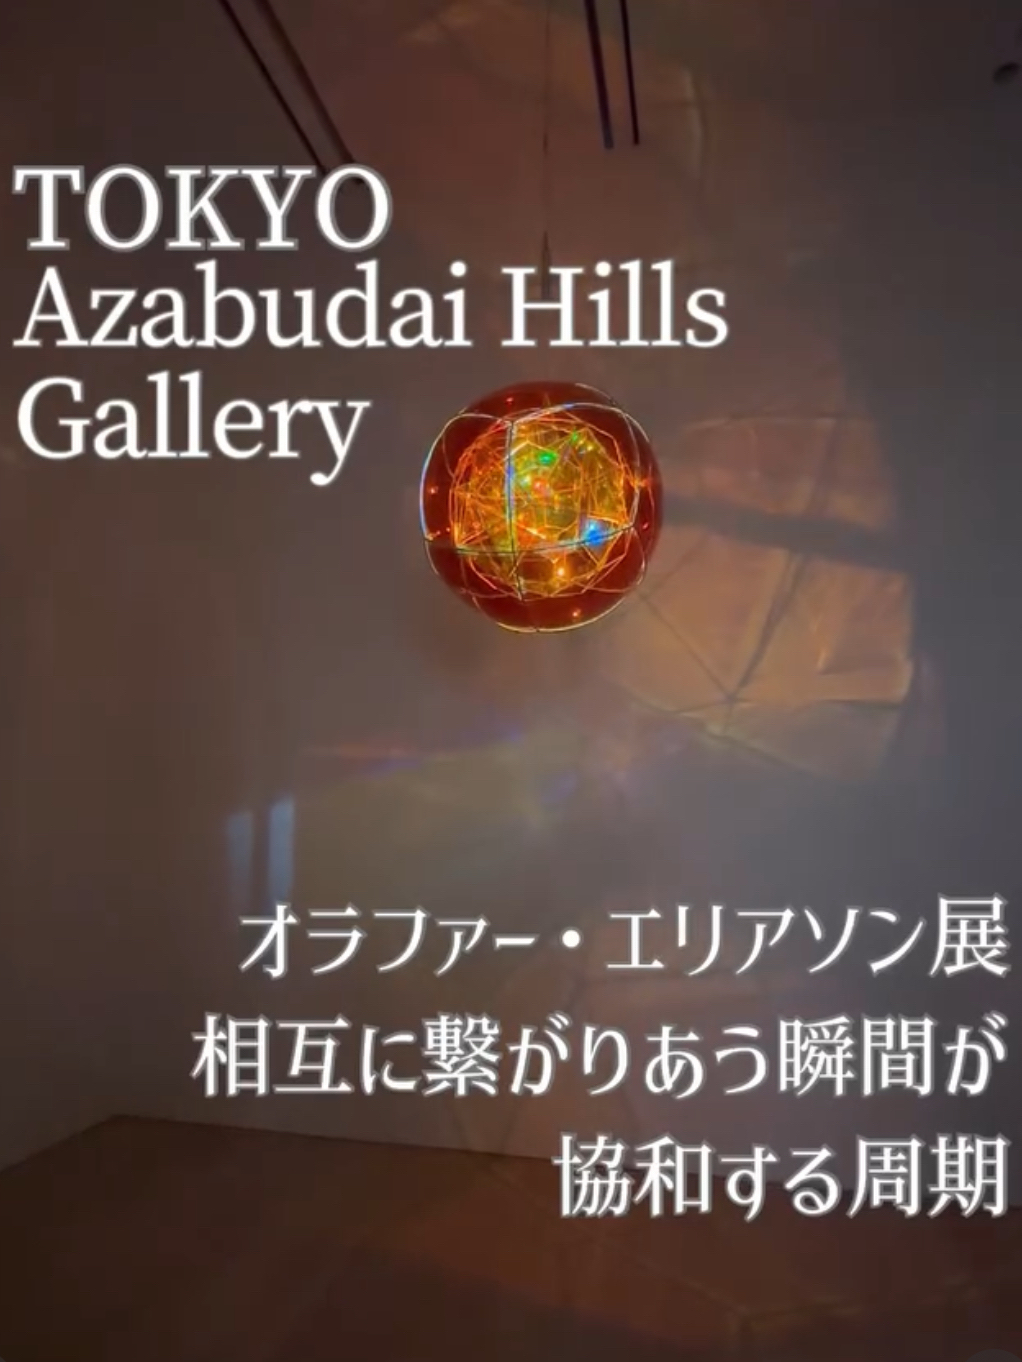 【东京】麻布台Hills画廊